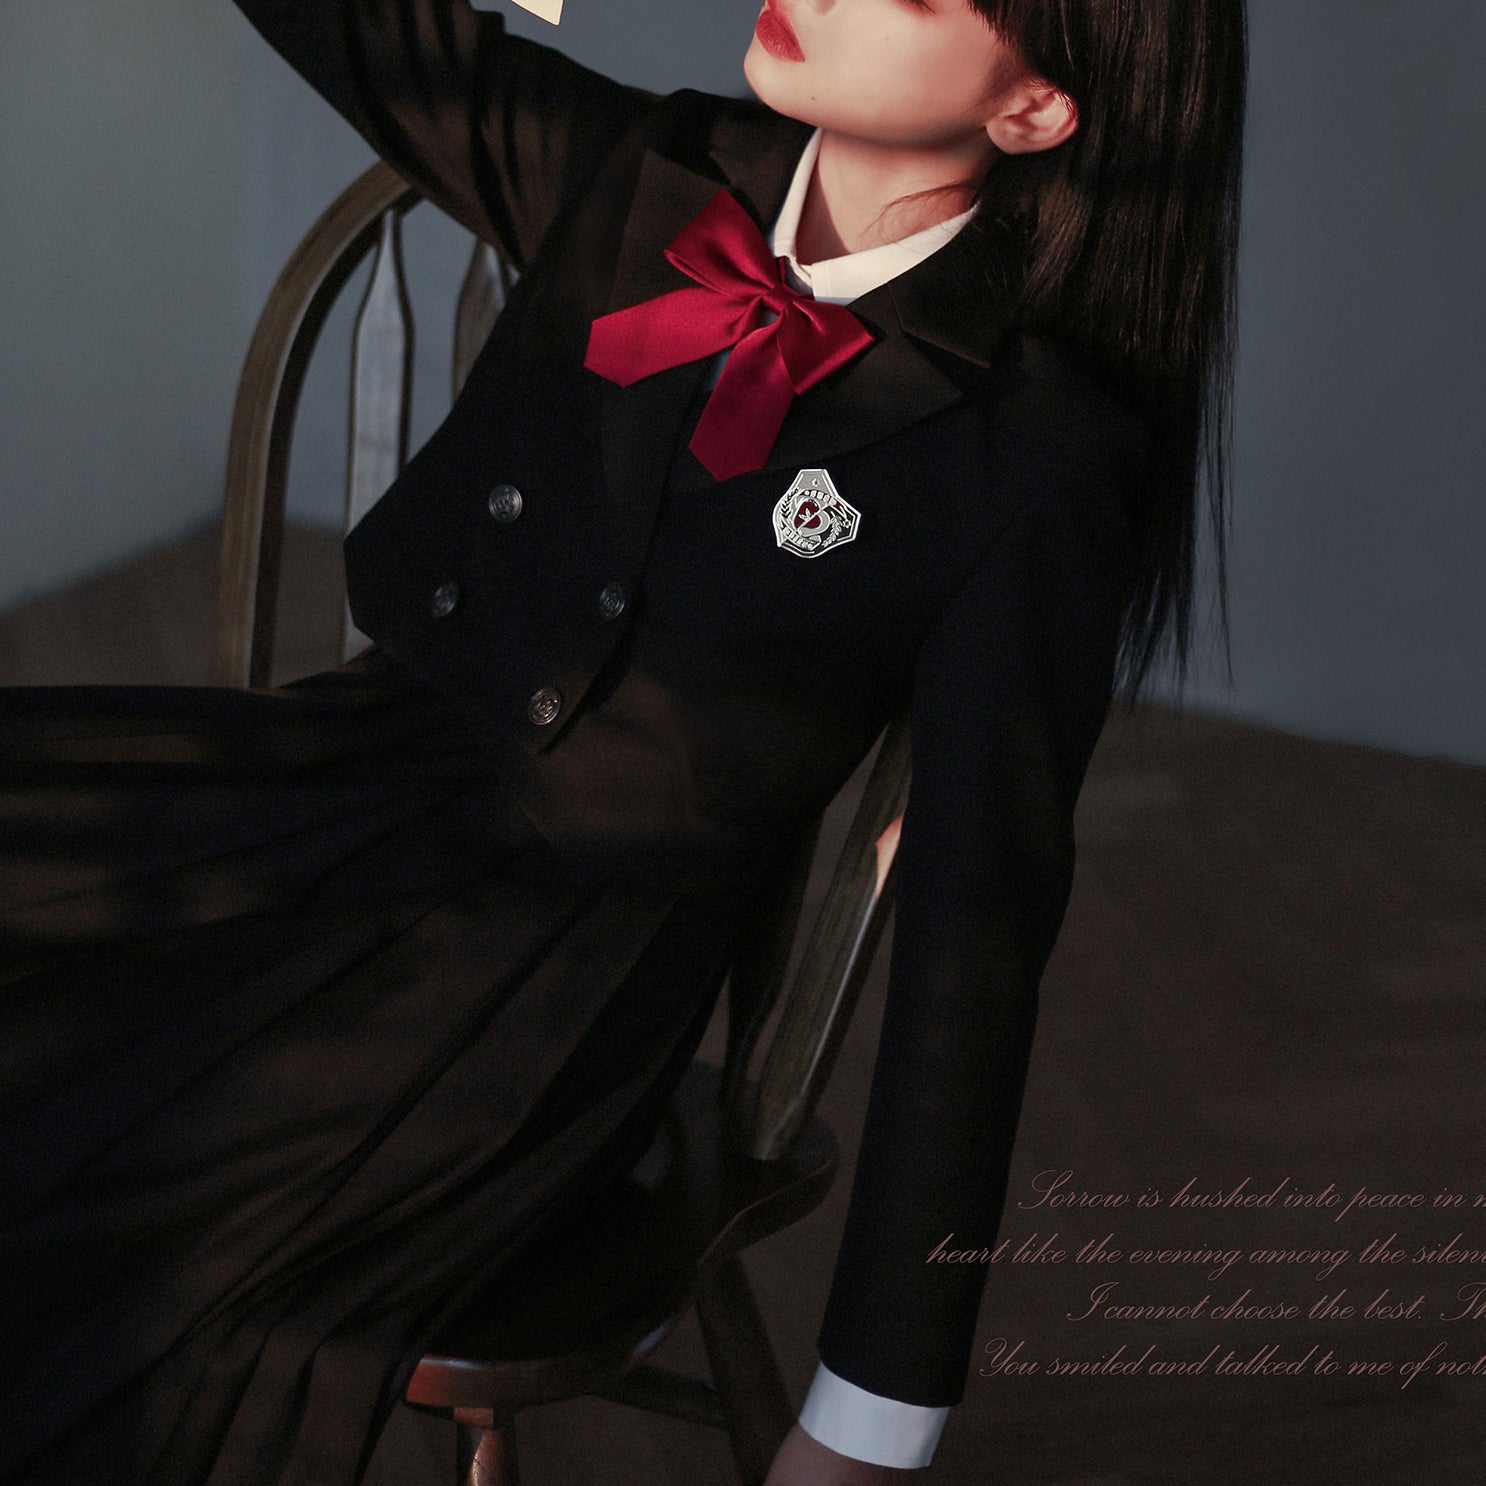 漆黒の文学少女クラシカルジャンパースカートとショートジャケットとブラウス